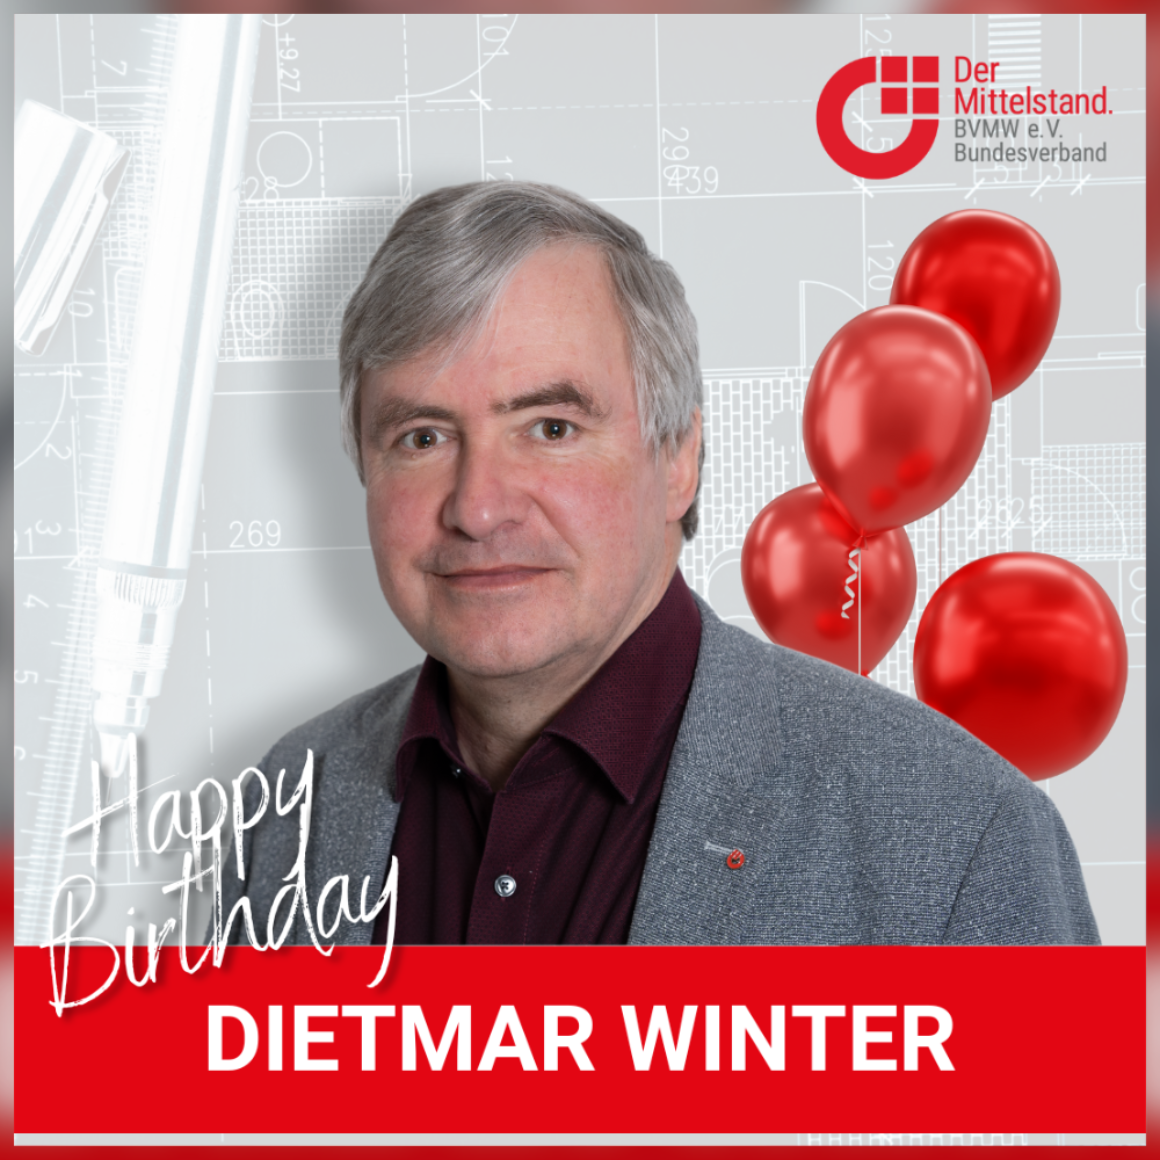 Herzlichen Glückwunsch Dietmar Winter